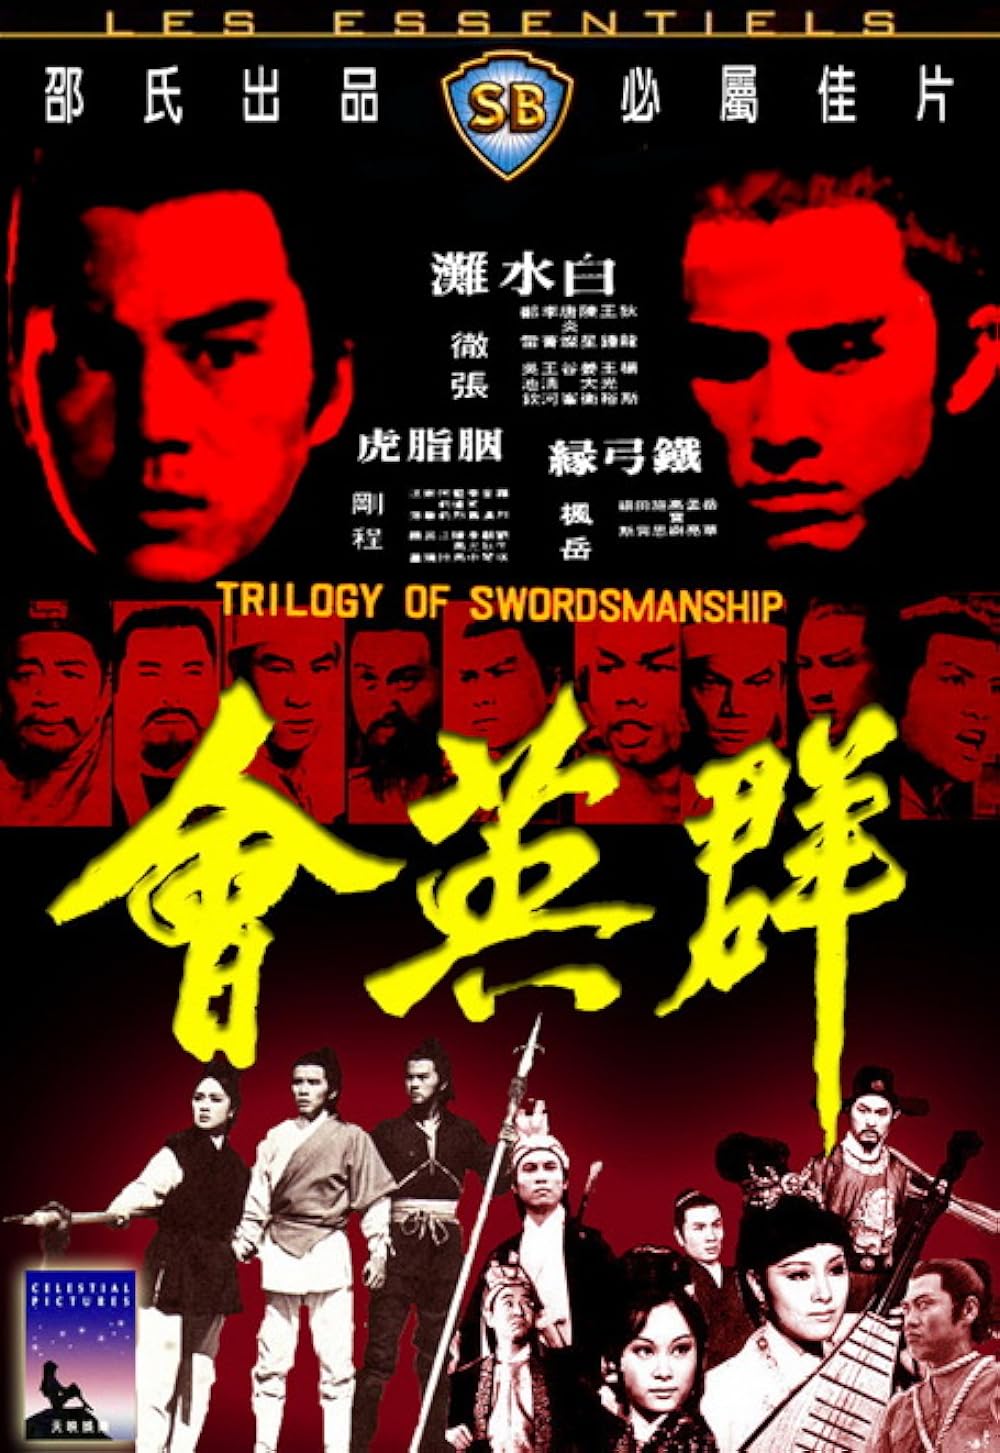 Trilogy of Swordsmanship (1972)